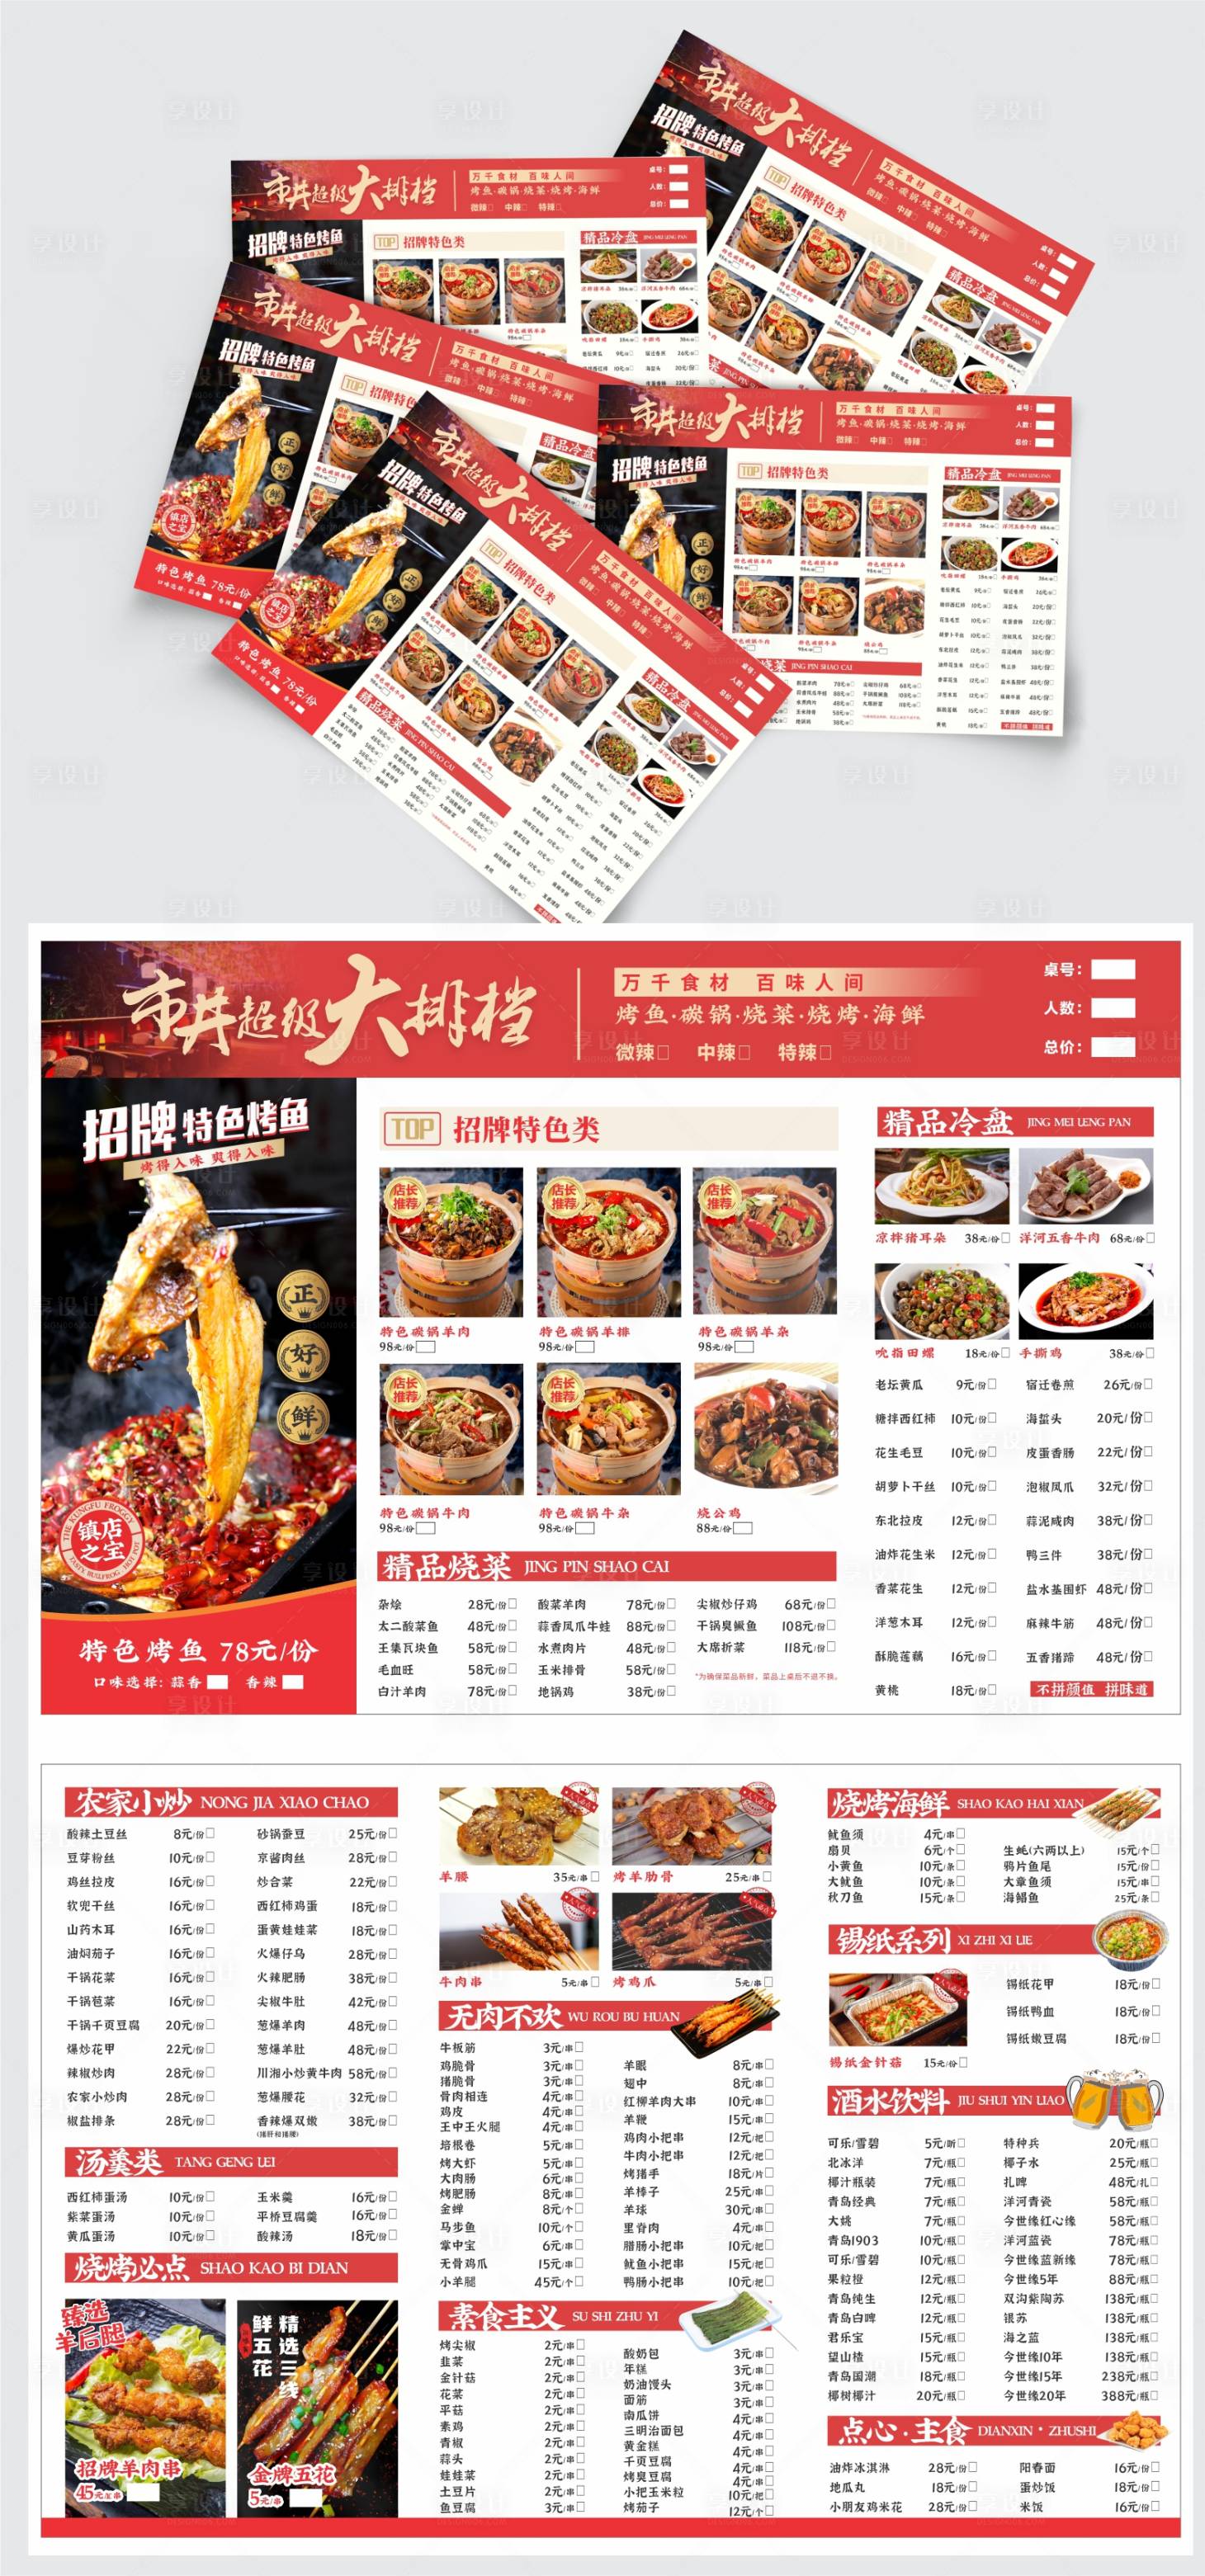 餐饮饭店大排档中餐美食菜谱菜单图片下载 - 觅知网